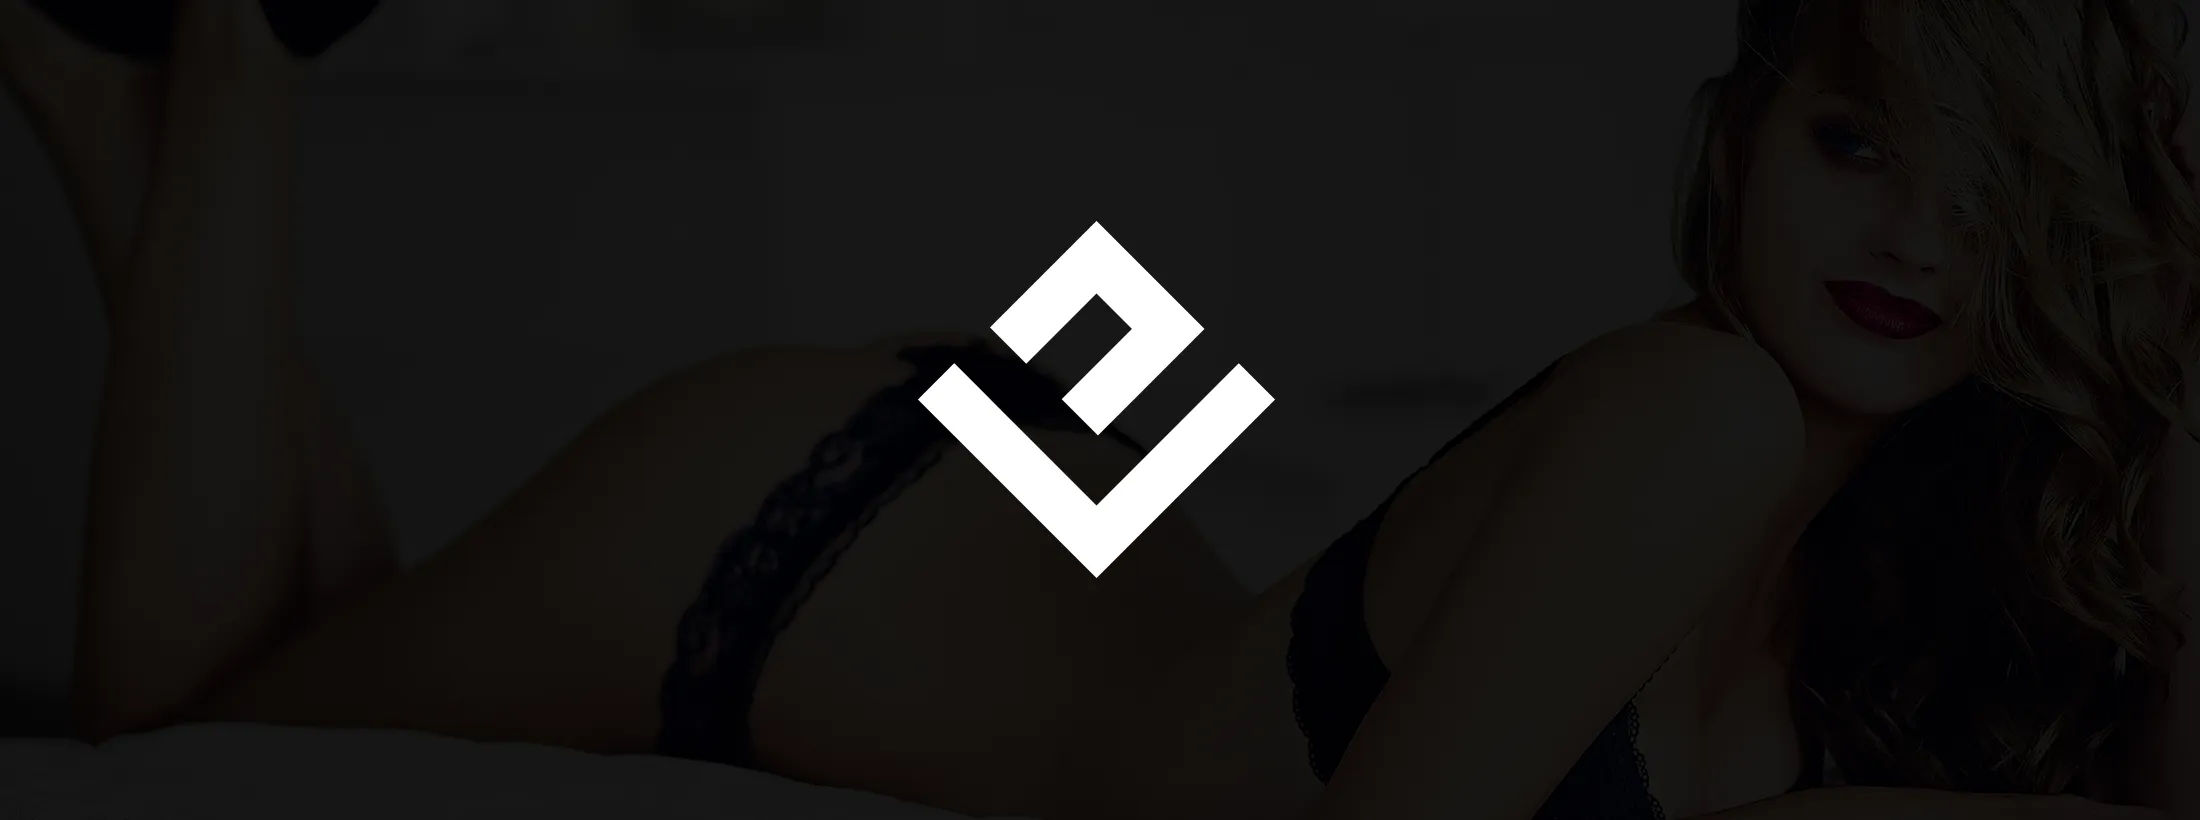 logo eurovet branding marque phone identite visuelle osb communication